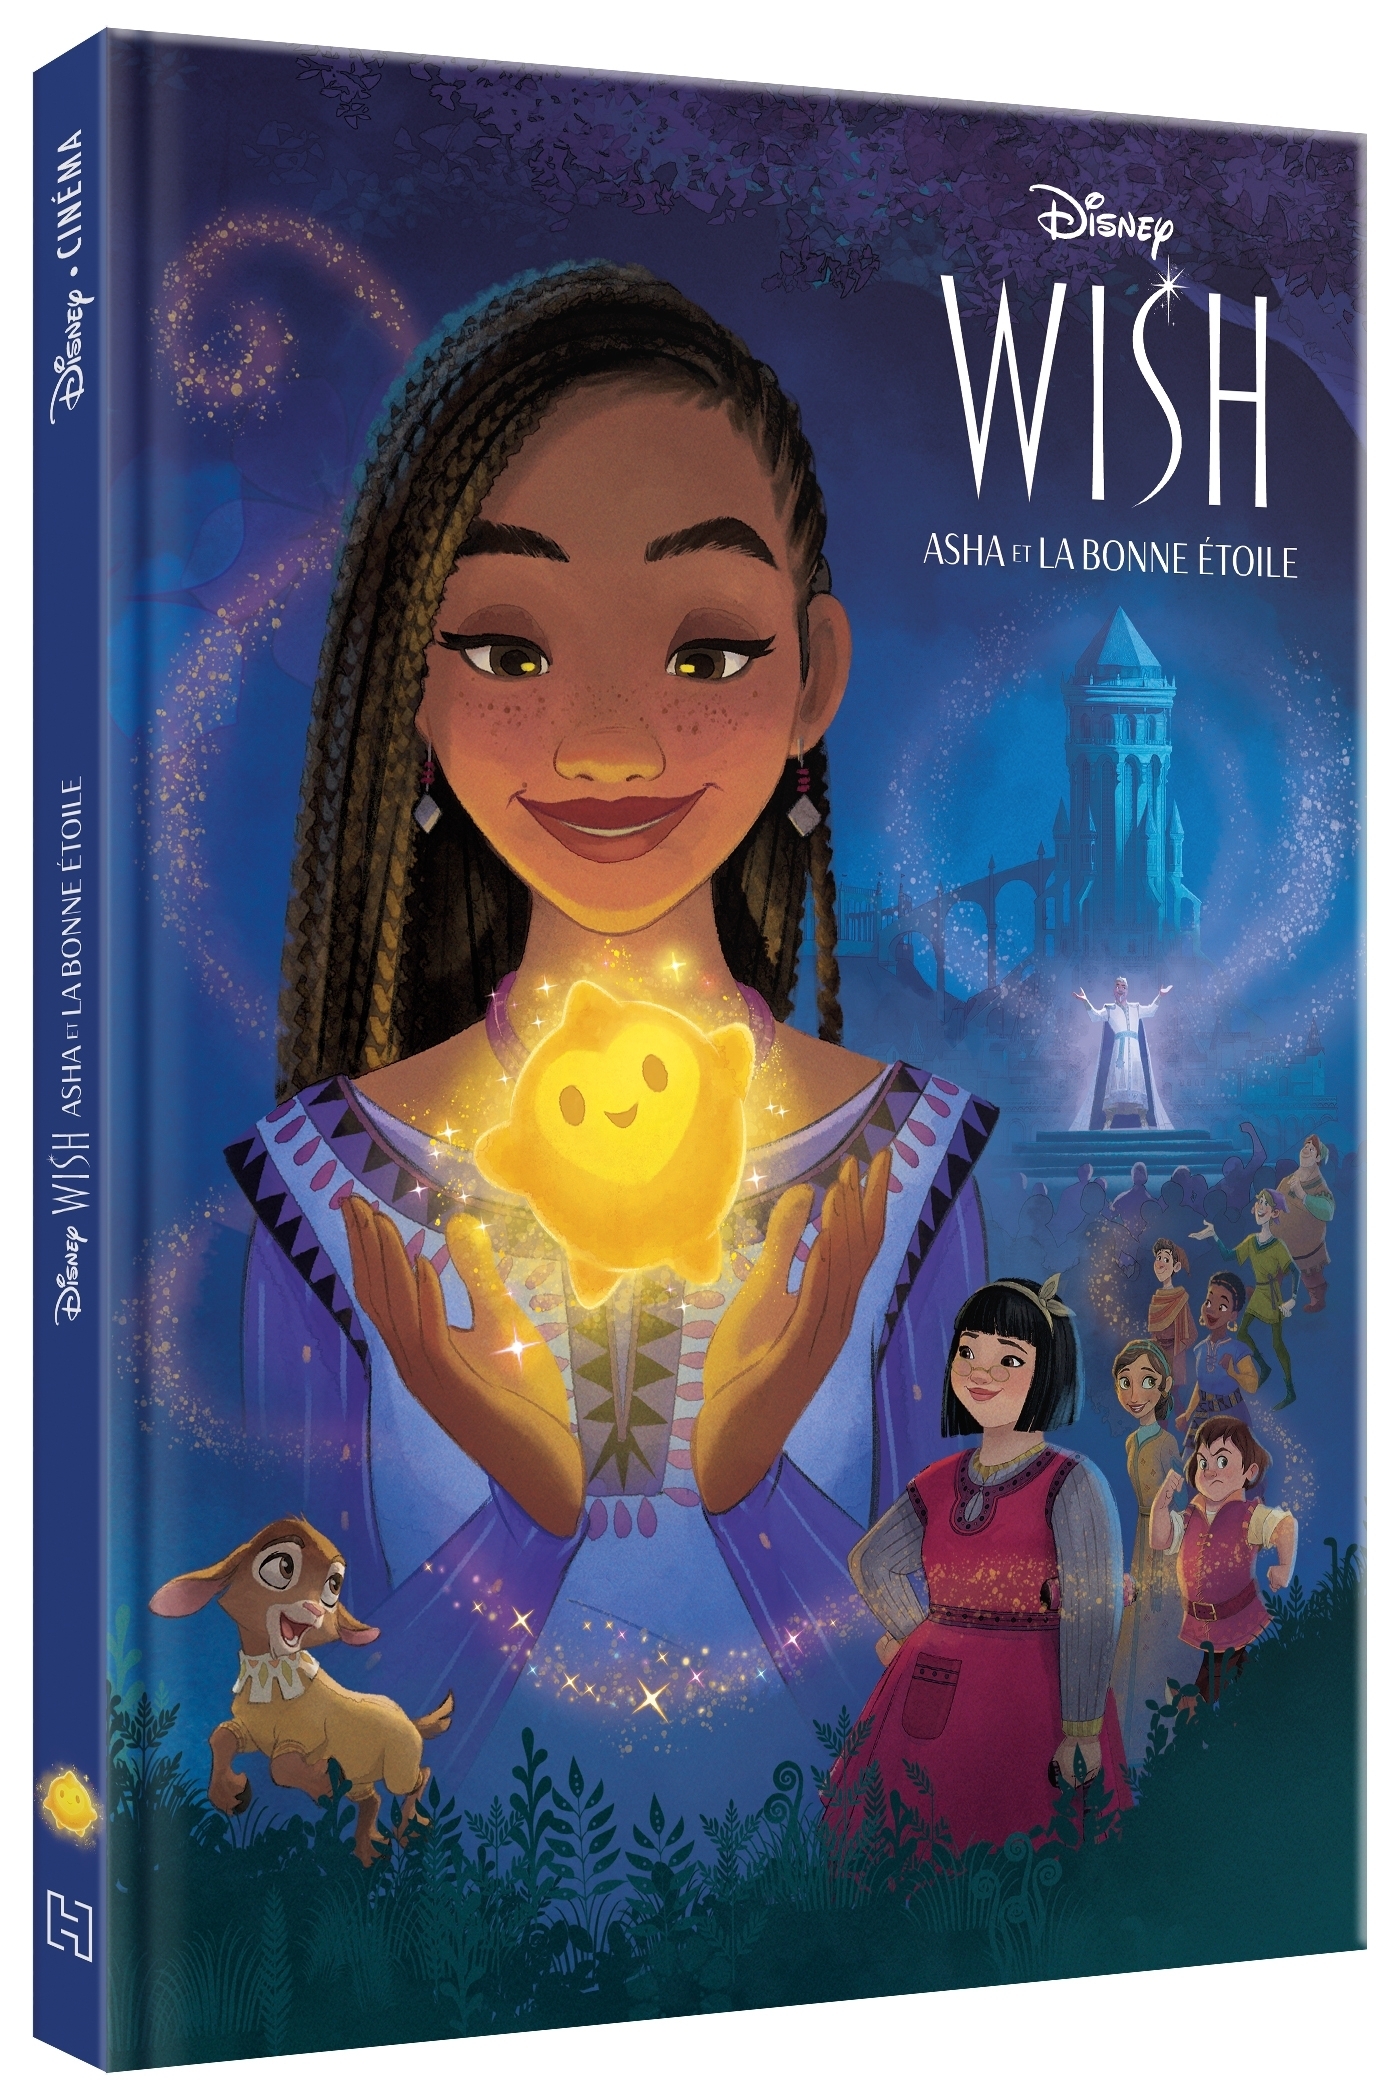 Wish - Asha et la bonne étoile : le Disney de Noël fait bien ses